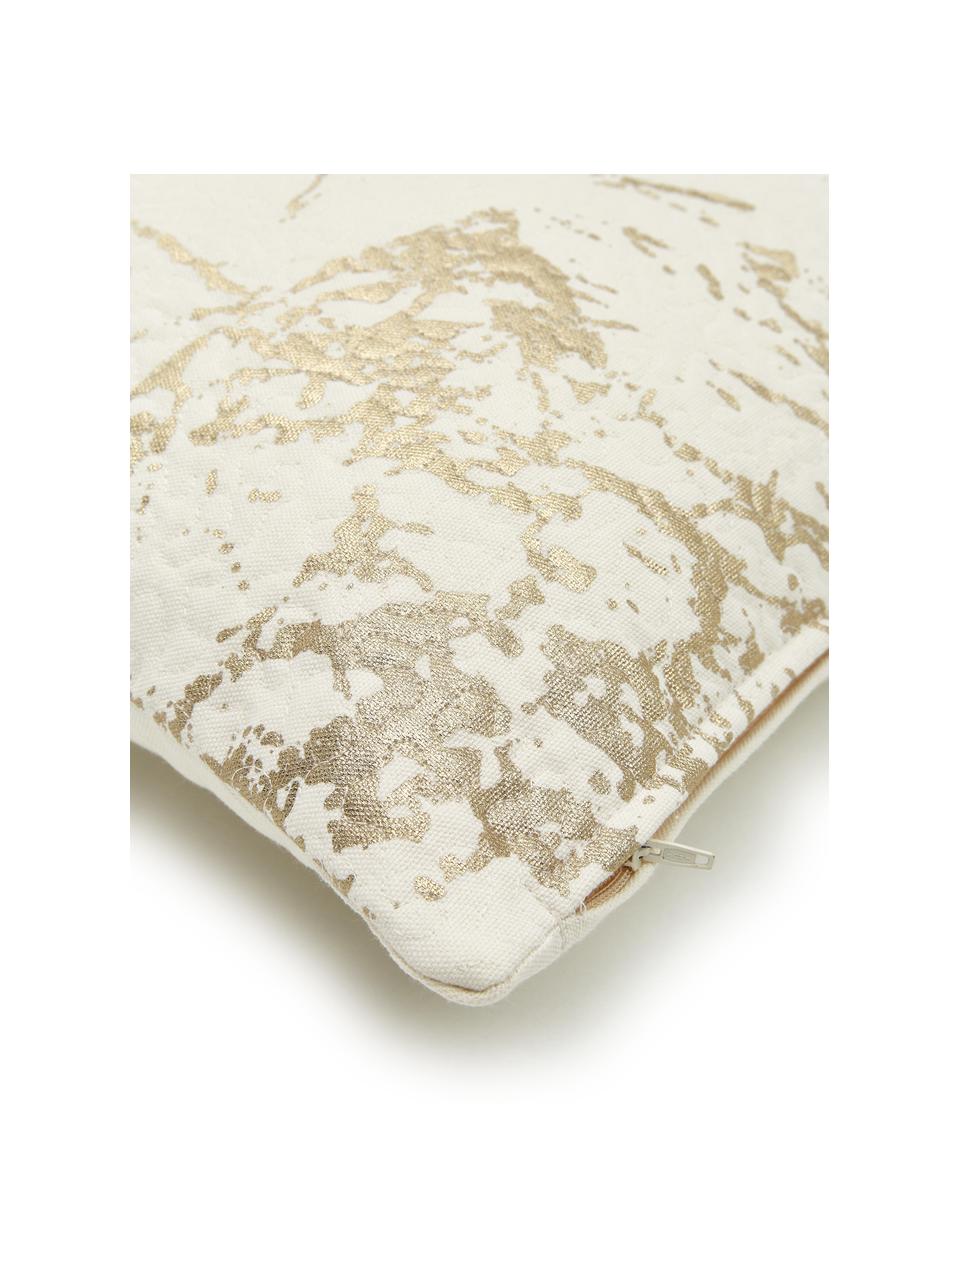 Cuscino con dettagli dorati e imbottitura Quilted, Rivestimento: 100% cotone, Bianco latteo, dorato, Larg. 45 x Lung. 45 cm